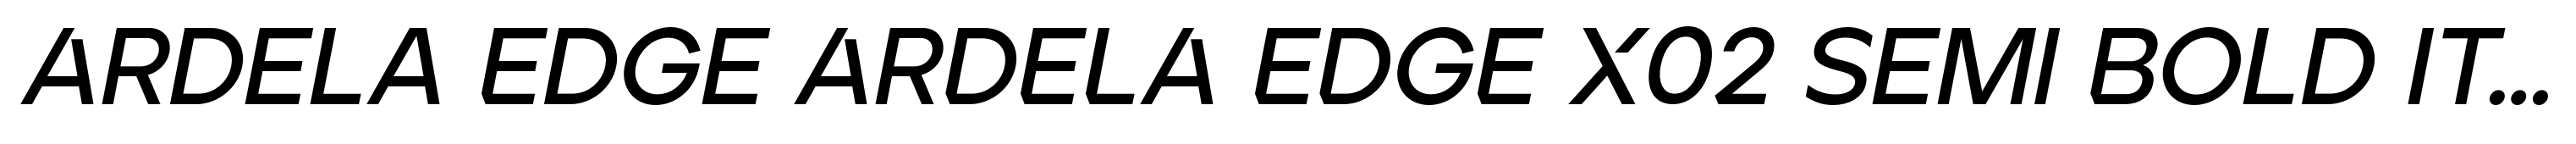 Ardela Edge ARDELA EDGE X02 Semi Bold Italic